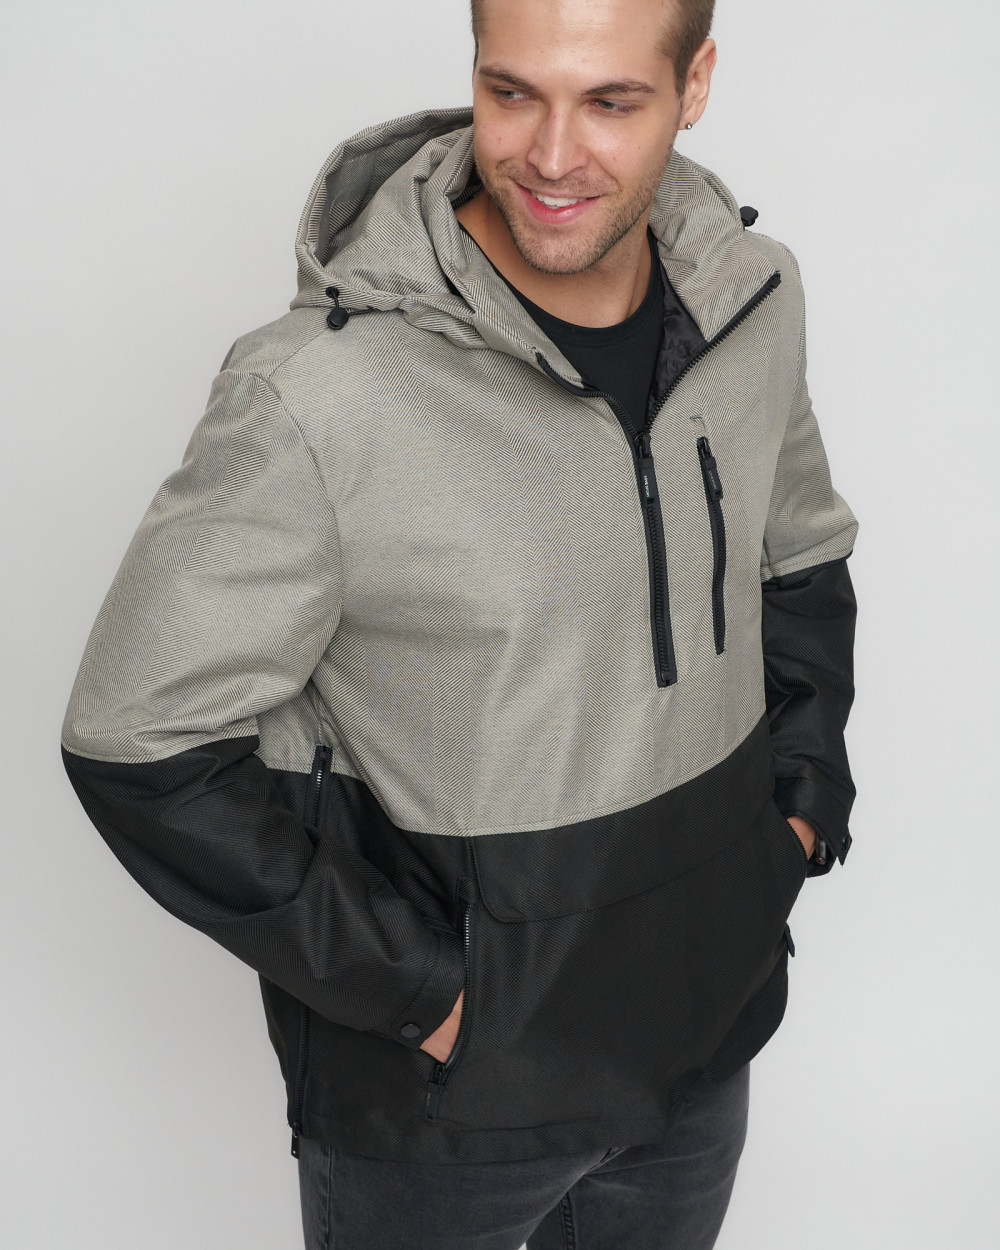 Купить куртку анорак спортивную мужскую оптом от производителя недорого в Москве 3307B 1